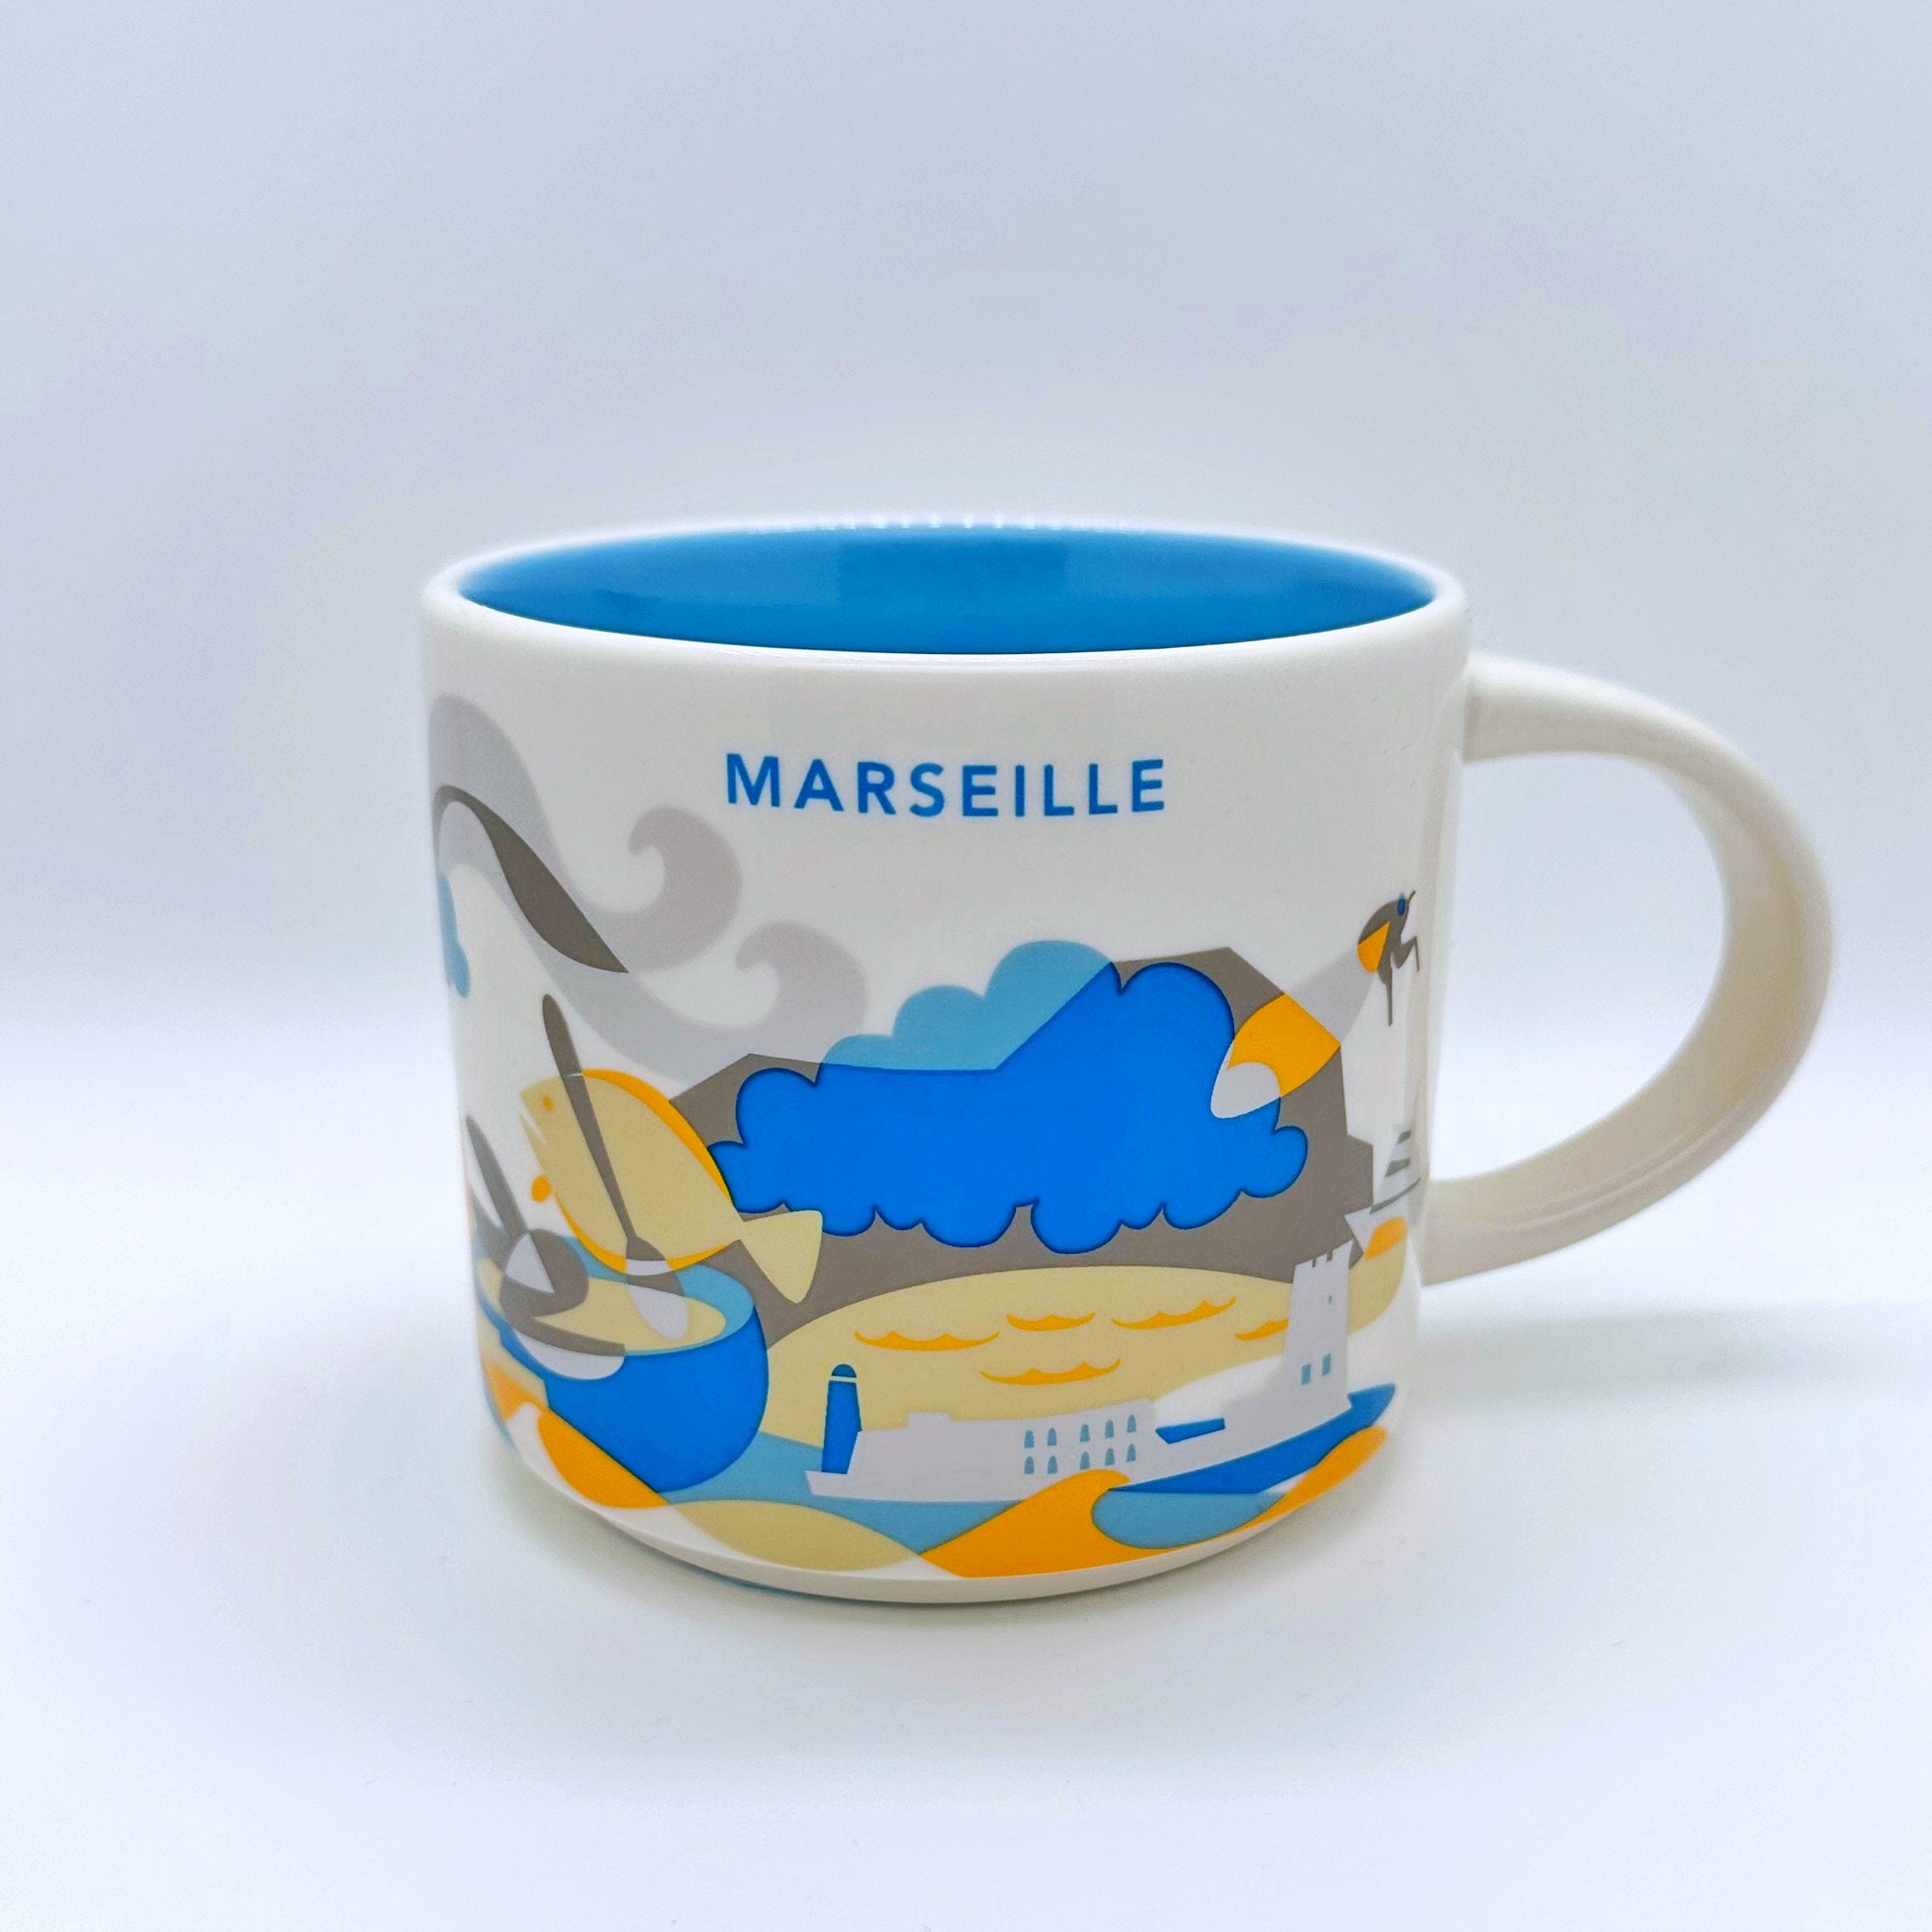 Marseille City Kaffee Tasse